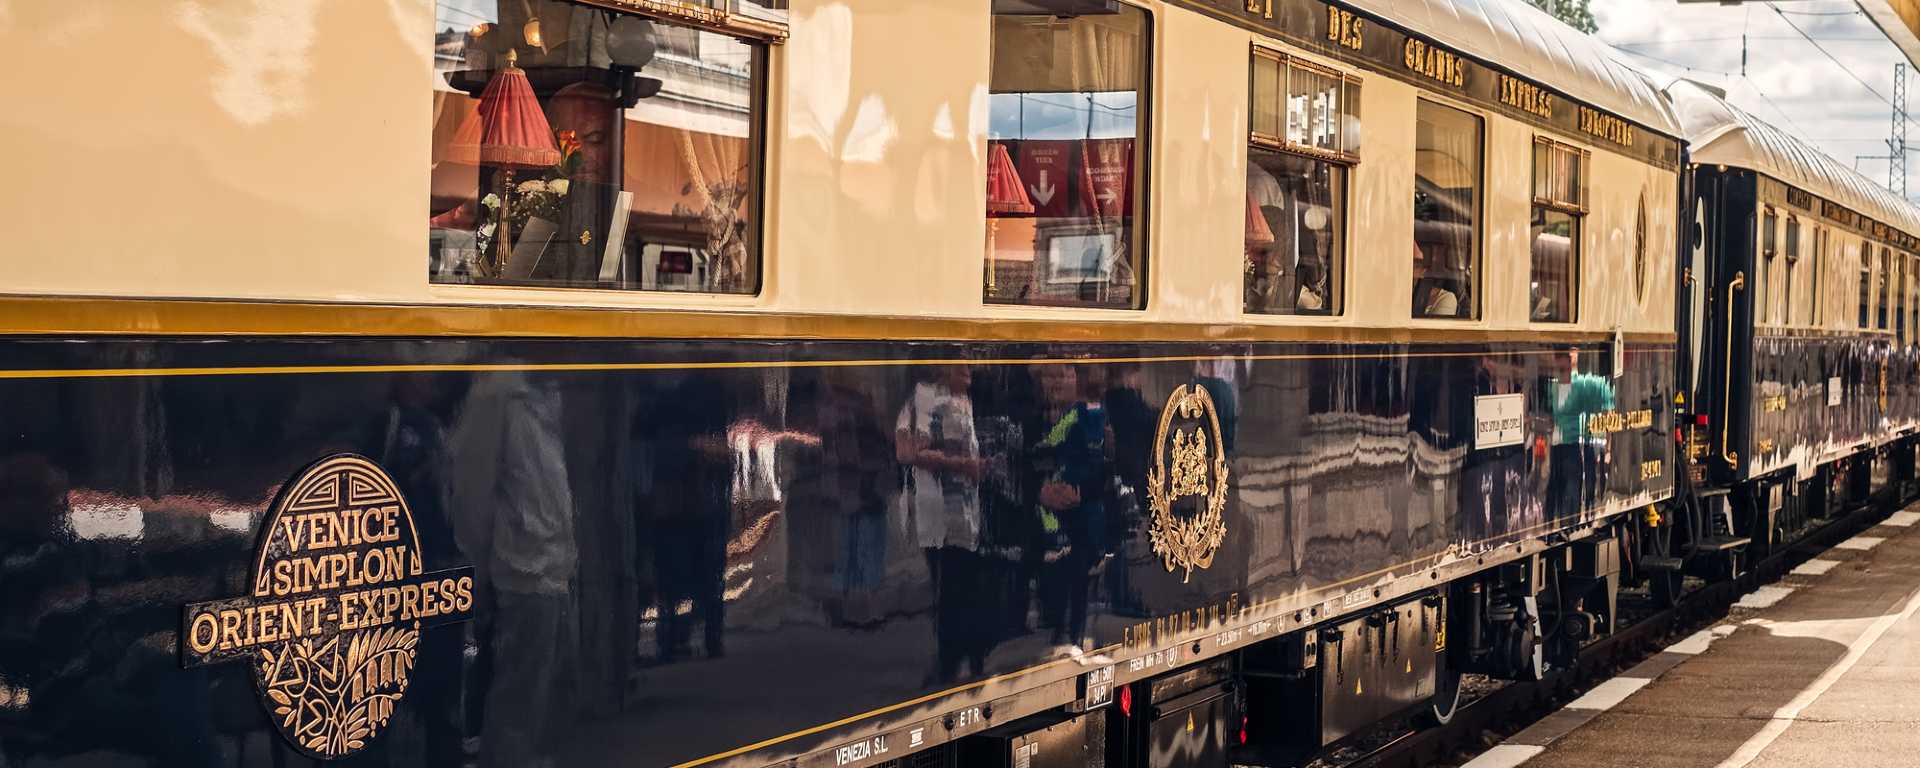 L’Orient-Express : histoire et itinéraires d’un train mythique